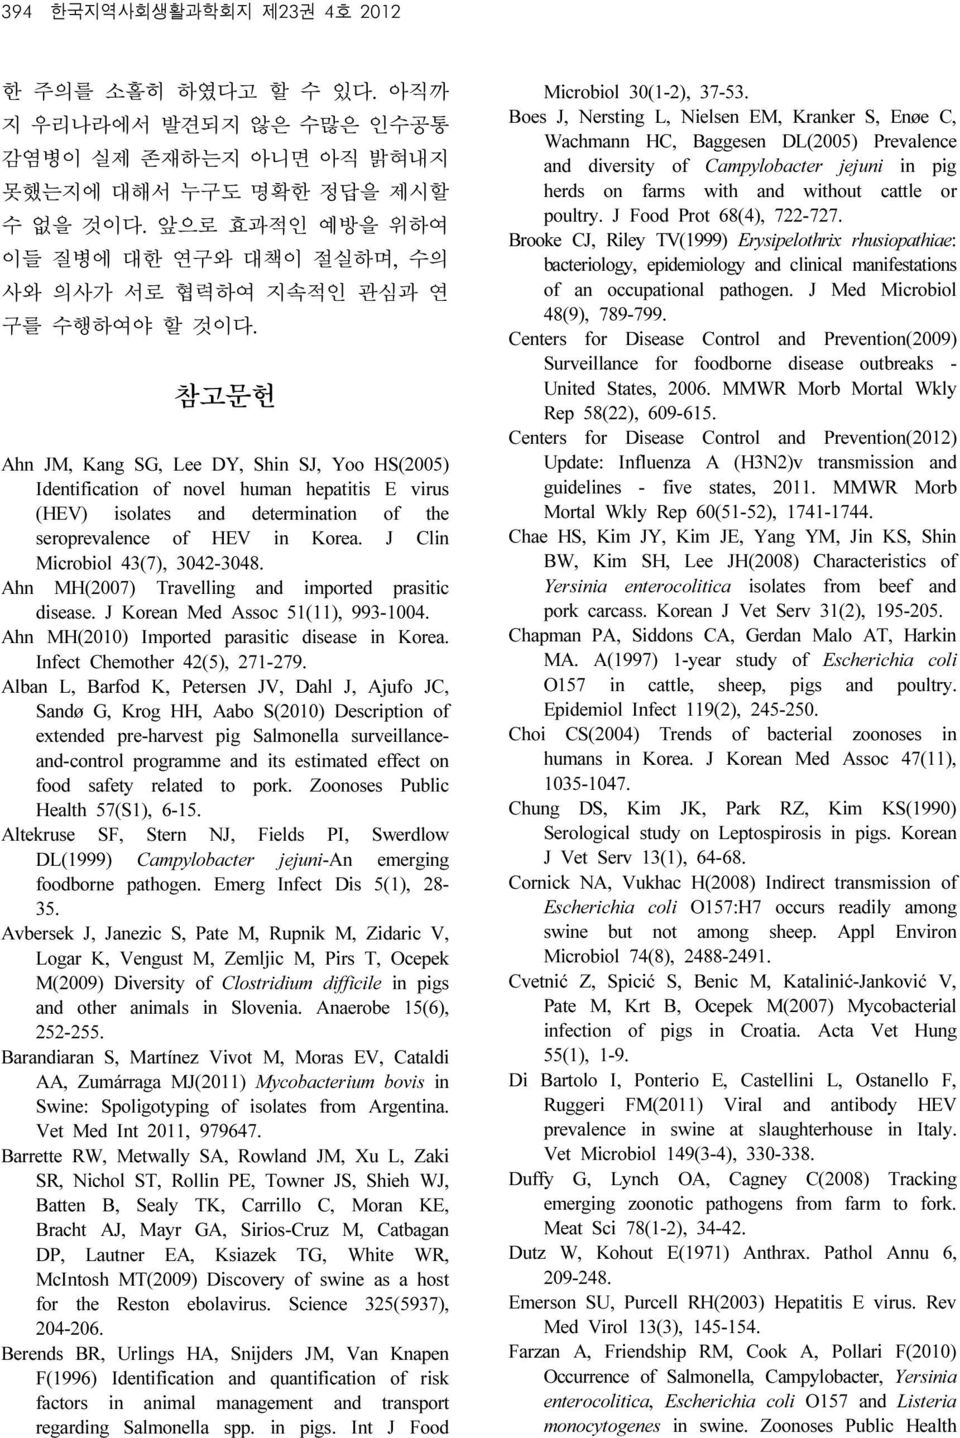 참고문헌 Ahn JM, Kang SG, Lee DY, Shin SJ, Yoo HS(2005) Identification of novel human hepatitis E virus (HEV) isolates and determination of the seroprevalence of HEV in Korea.